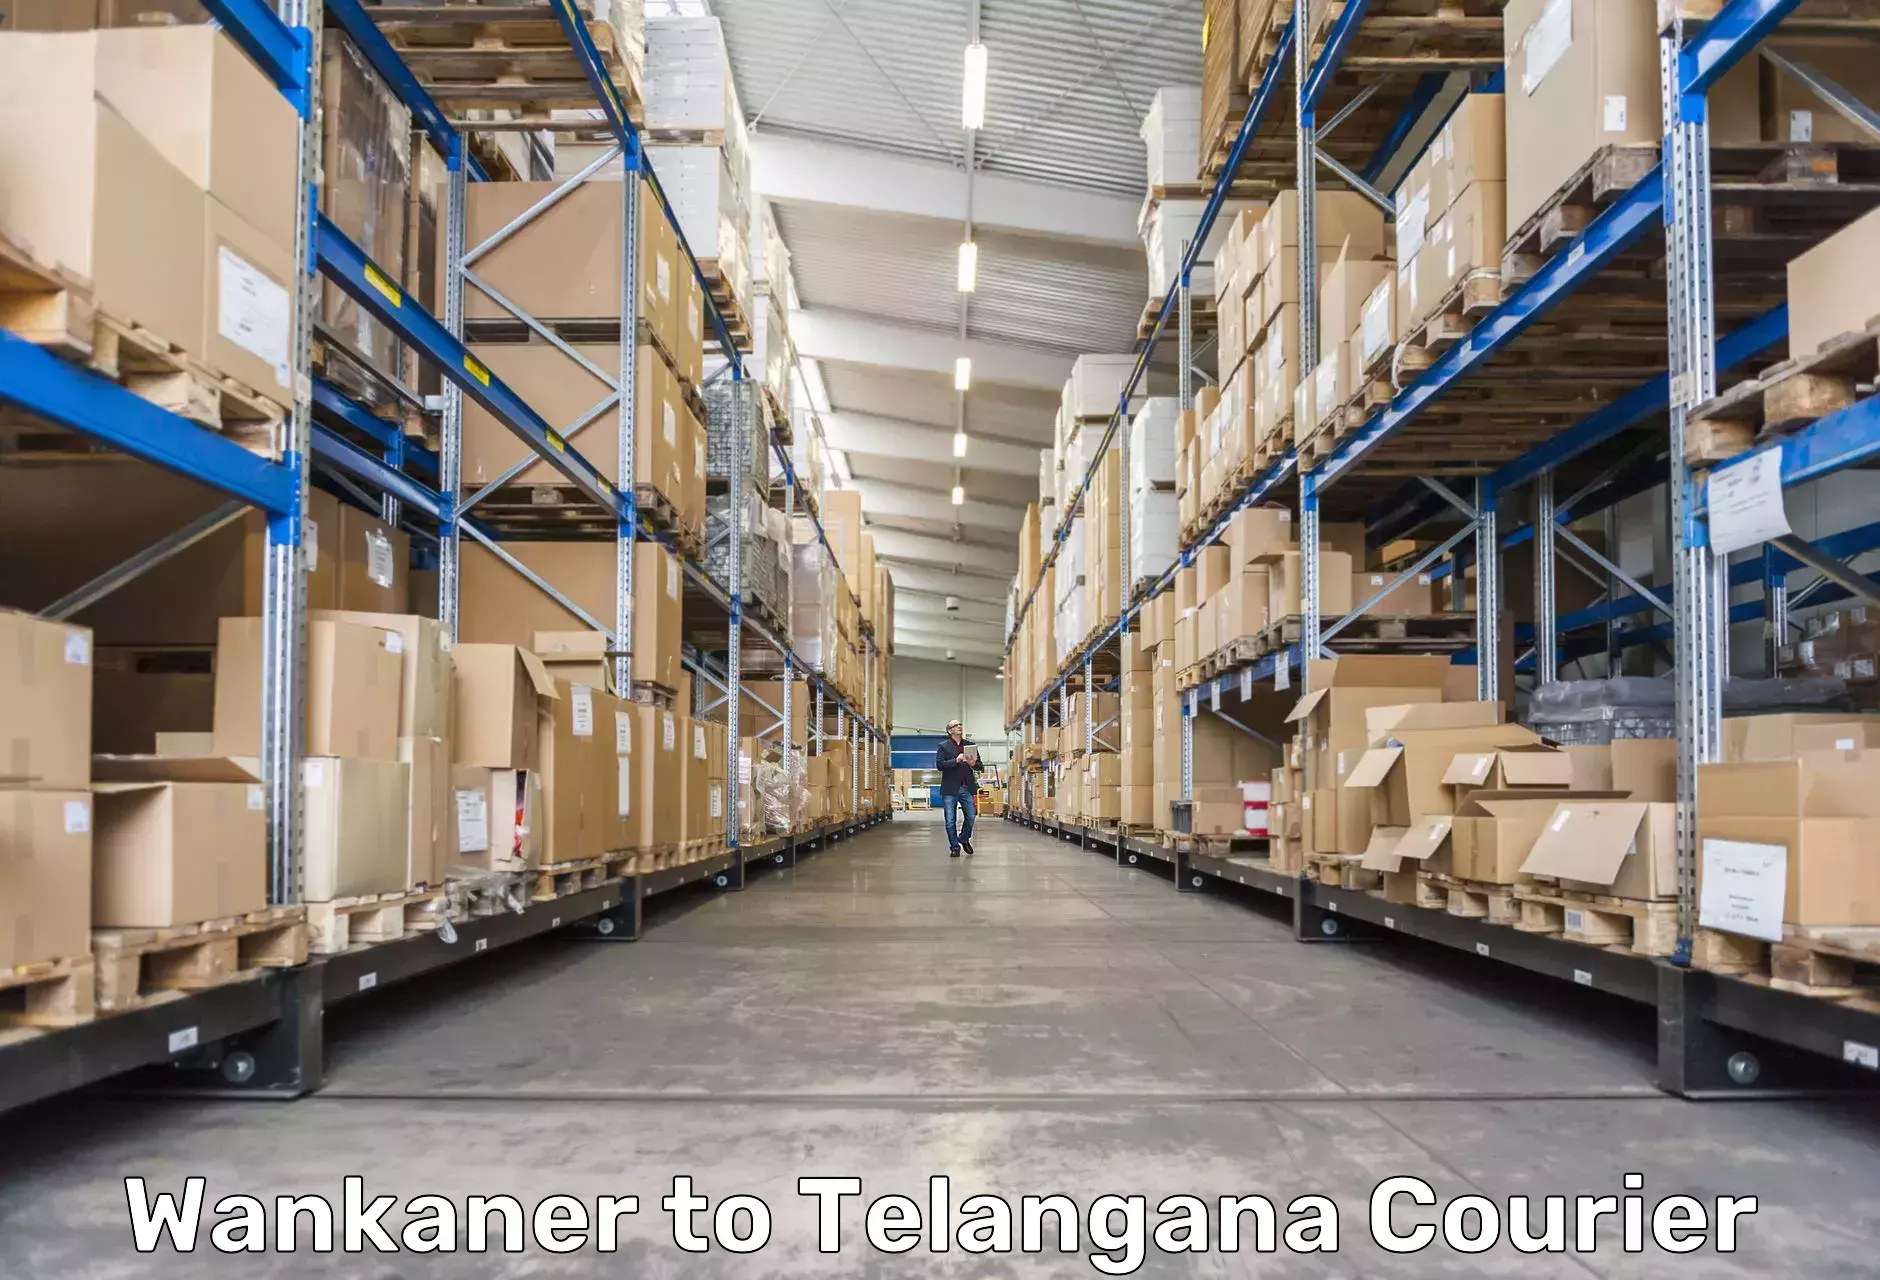 Professional courier handling Wankaner to Kalwakurthy